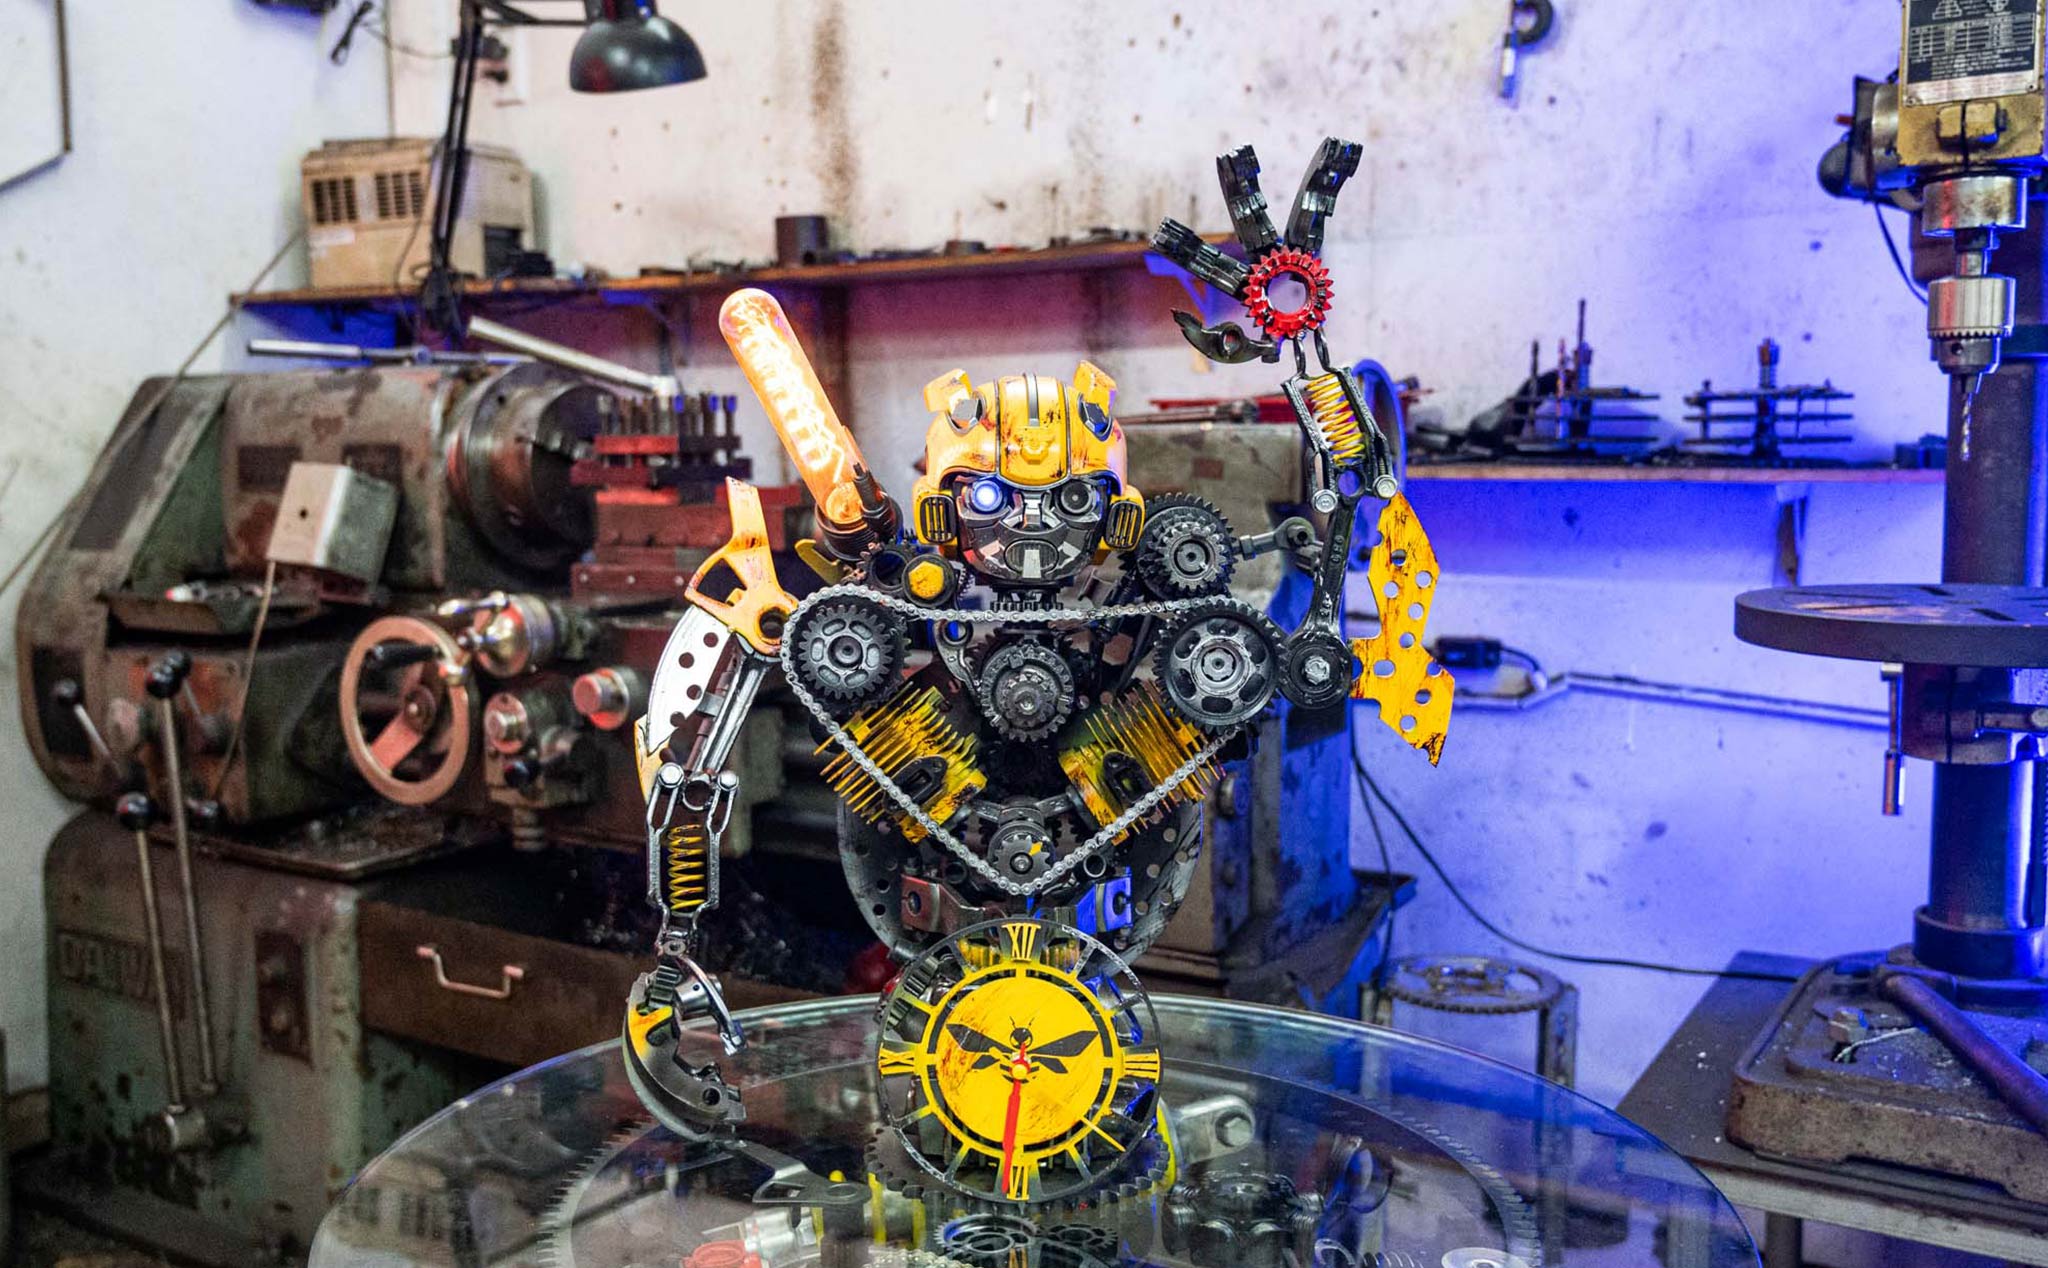 Trên tay đồng hồ để bàn với thiết kế Bumblebee được làm từ linh kiện xe máy